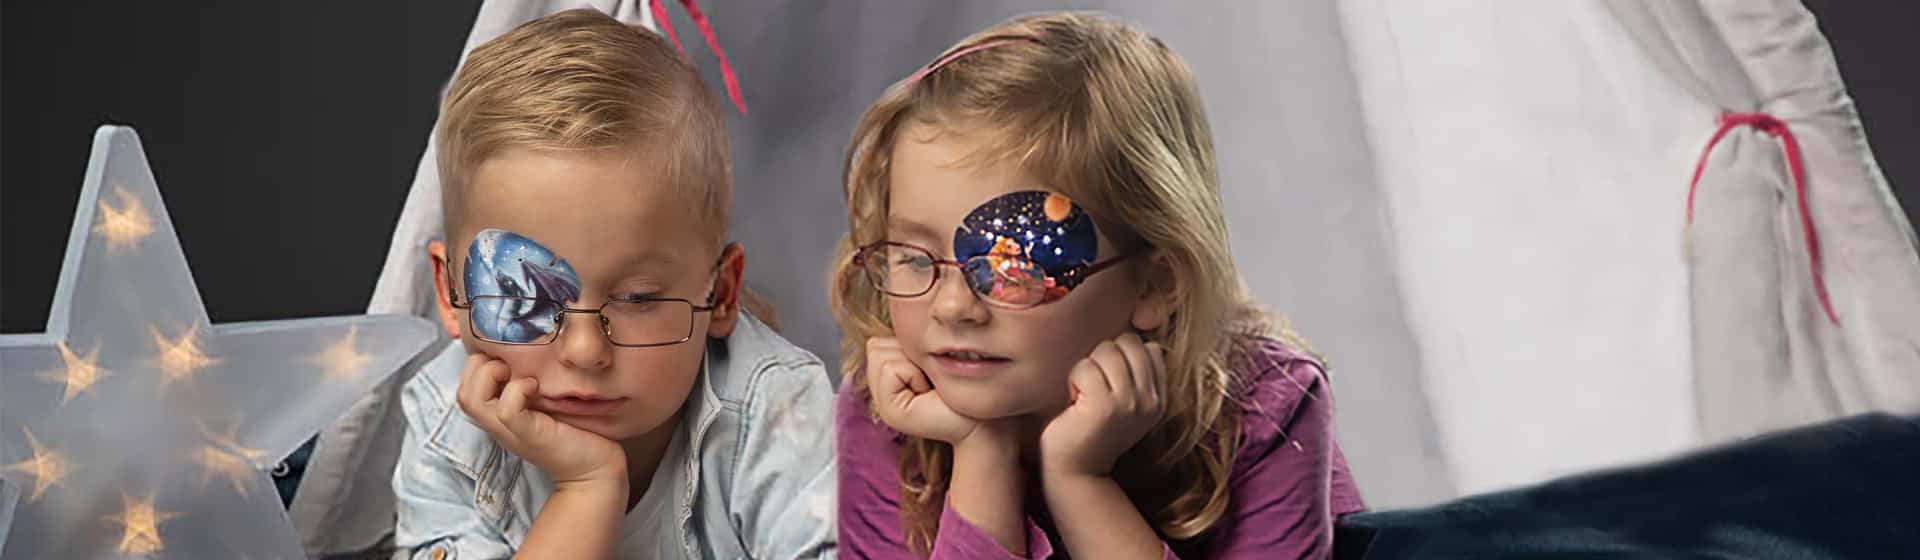 Kinder tragen Augenpflaster mit Funkelsteinen